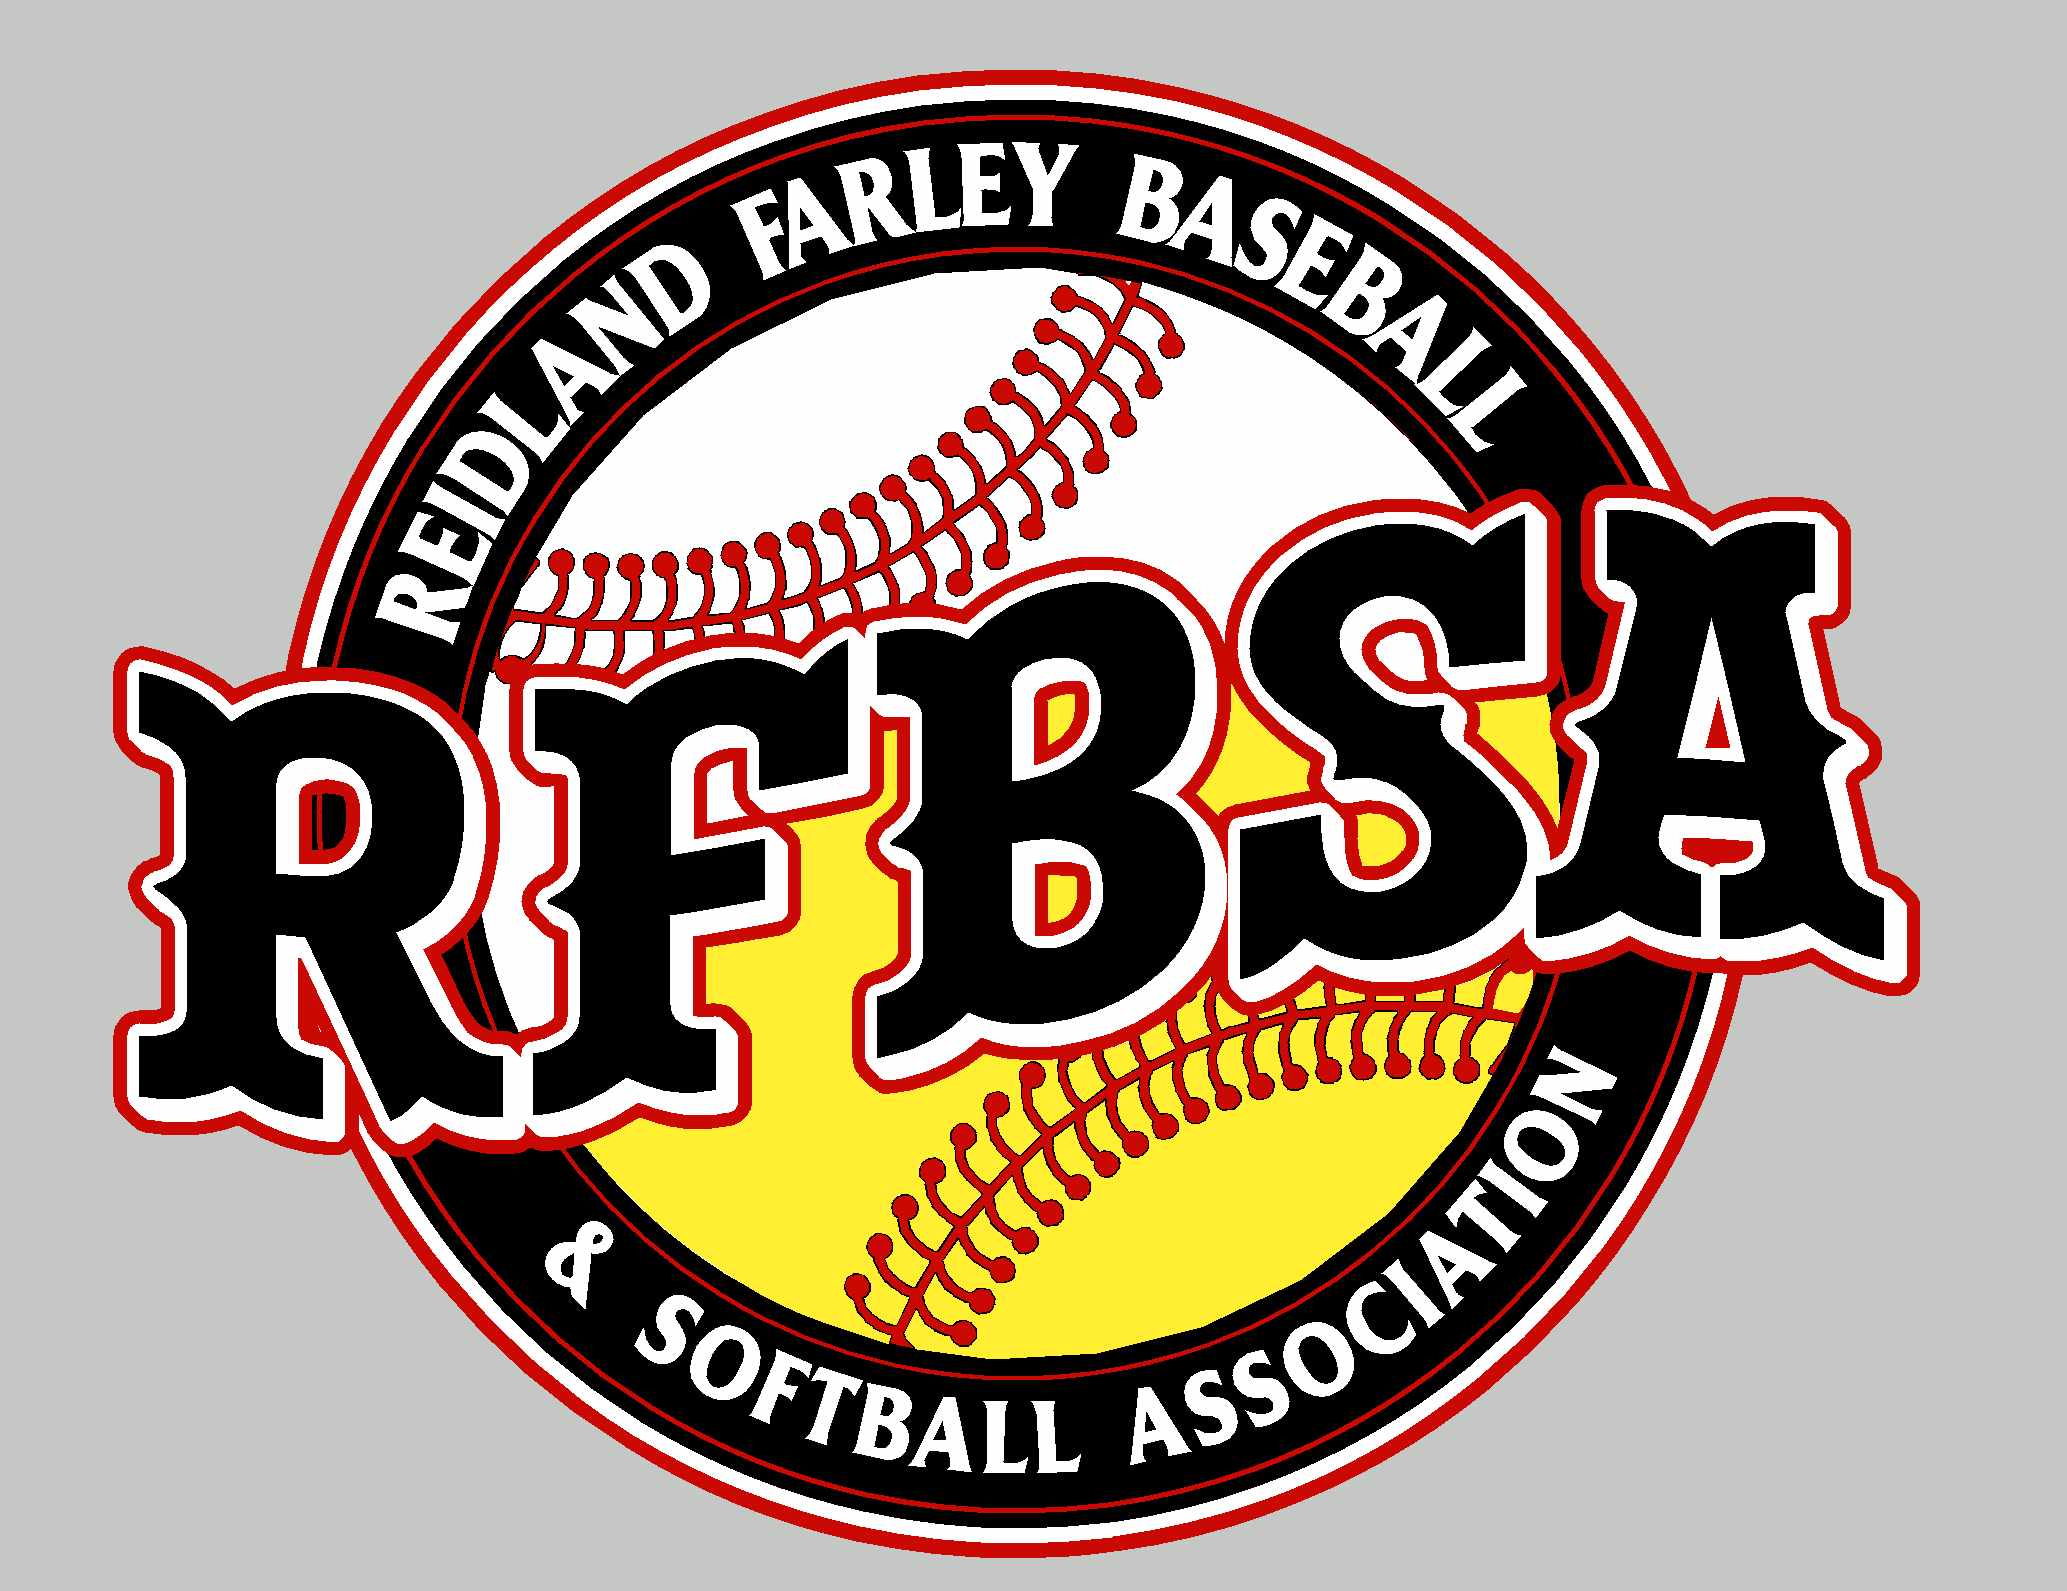 Baseball and Softball Logo - Reidland Farley Baseball Softball Association